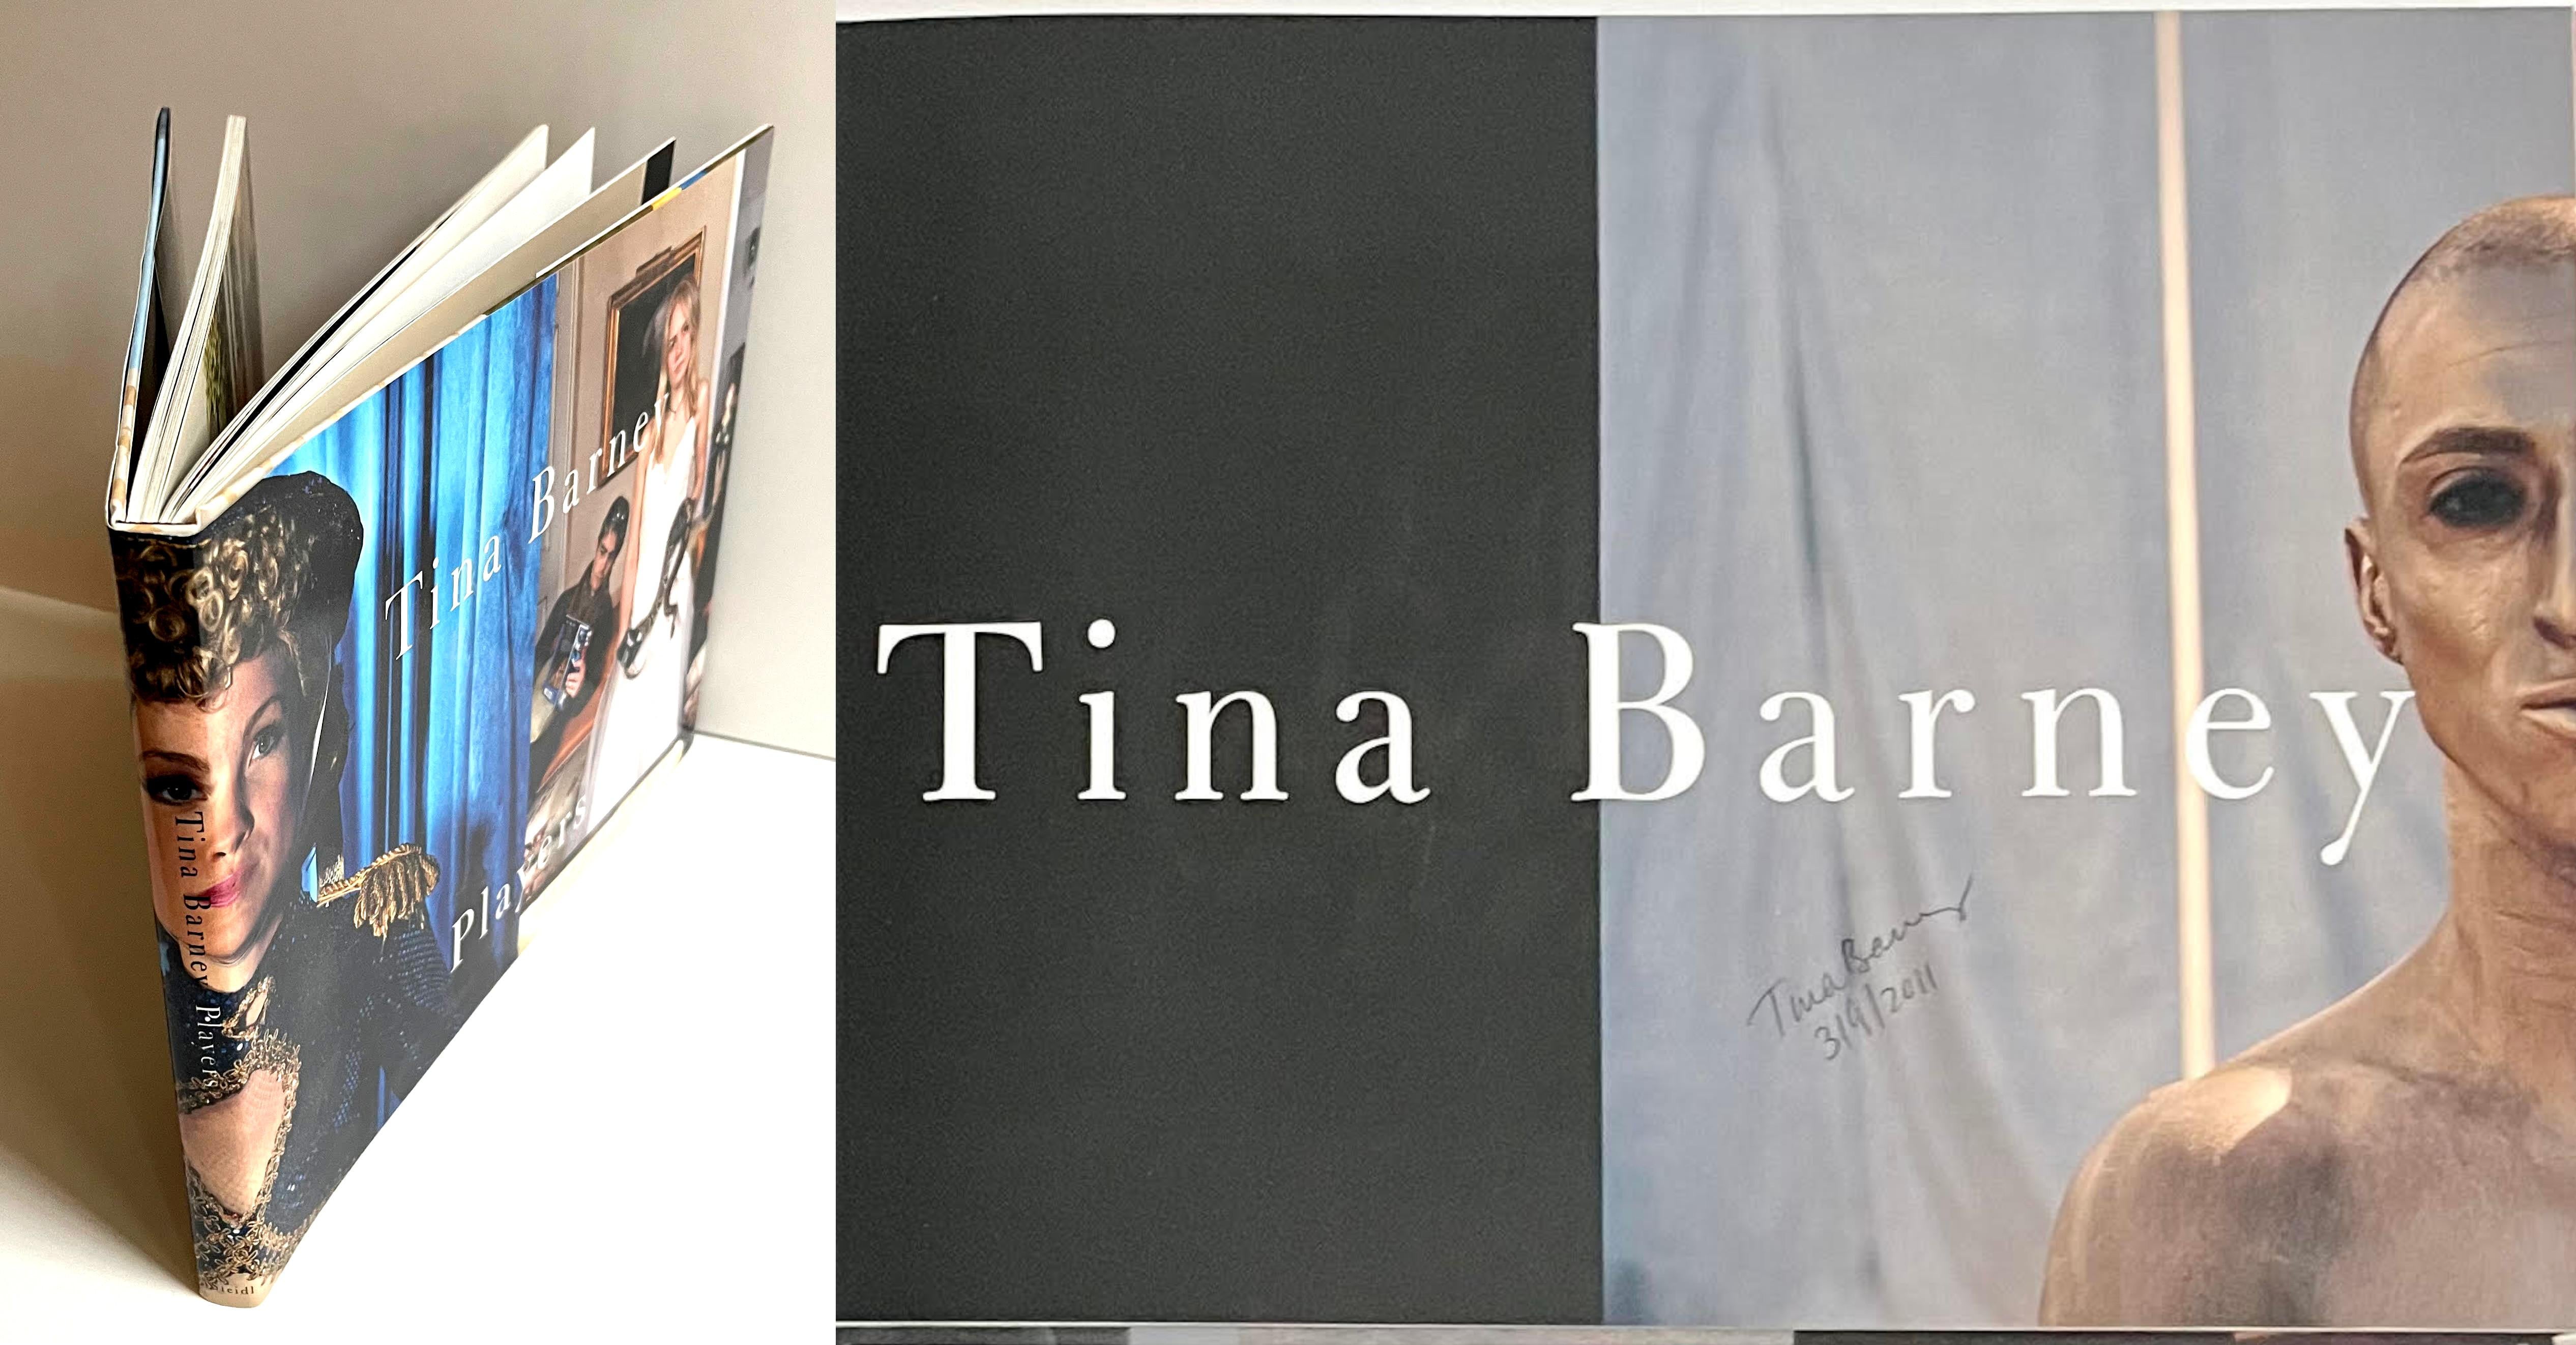 Tina Barney
Joueurs (signé et daté par Tina Barney), 2010
Monographie reliée avec jaquette (signée et datée par Tina Barney)
Signé et daté le 3/9/2011 par Tina Barney
9 × 12 × 3/4 pouces

Signé et daté 3/9/2011 par Tina Barney sur la page de